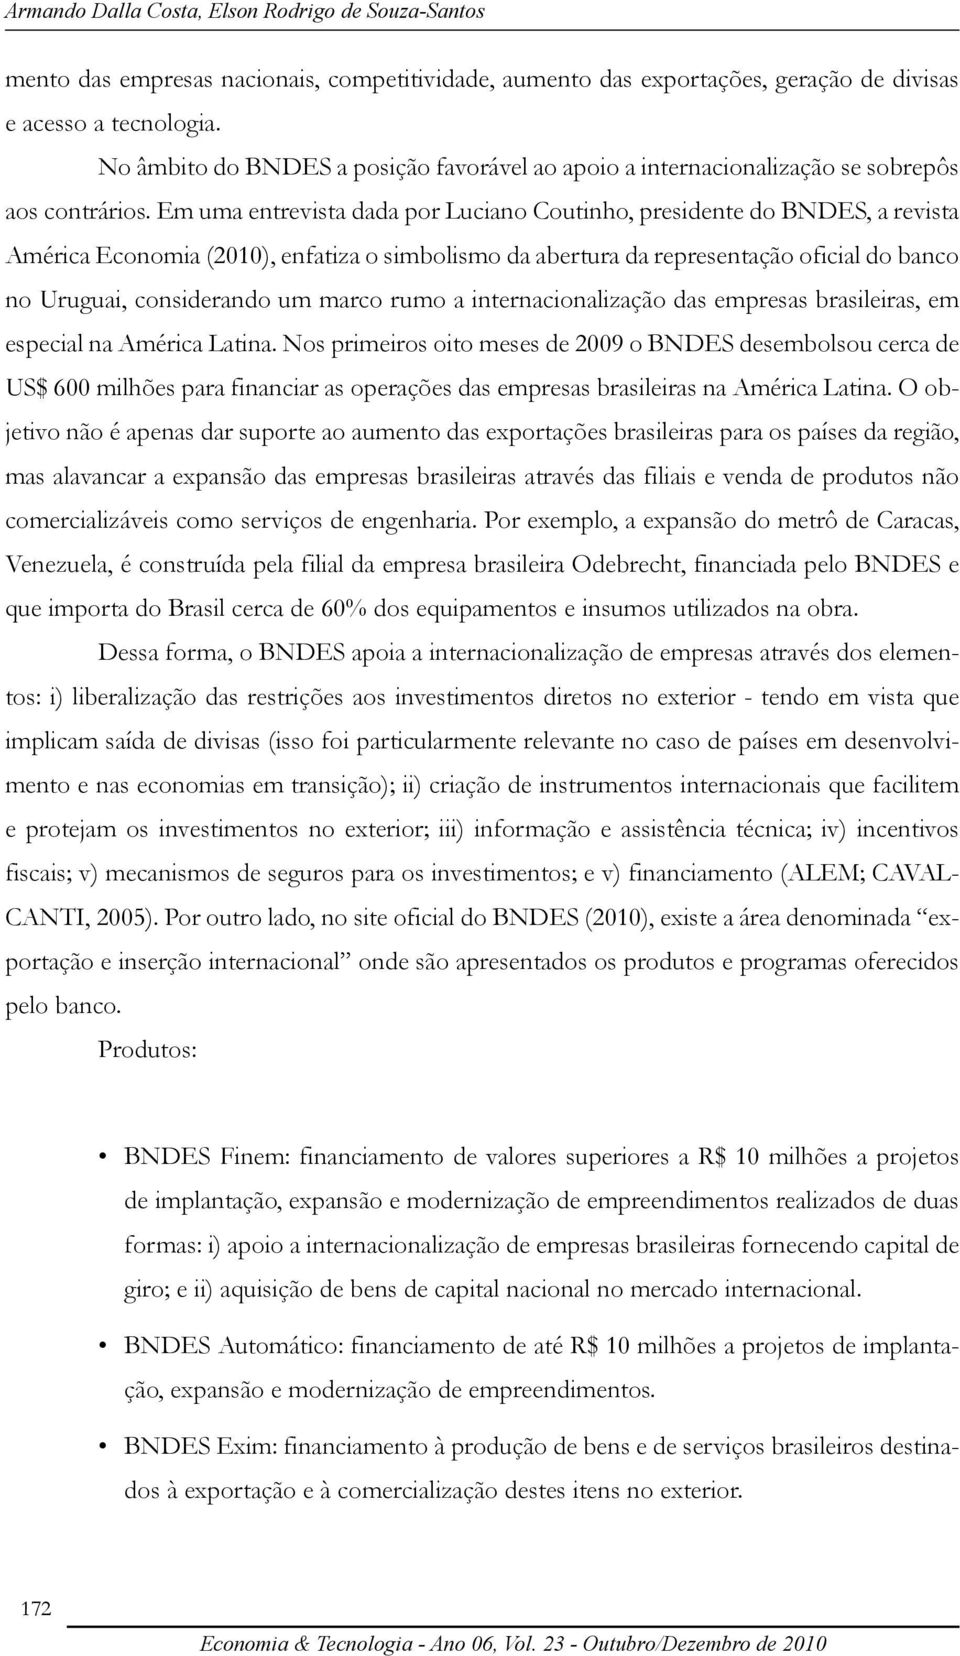 Em uma entrevista dada por Luciano Coutinho, presidente do BNDES, a revista América Economia (2010), enfatiza o simbolismo da abertura da representação oficial do banco no Uruguai, considerando um